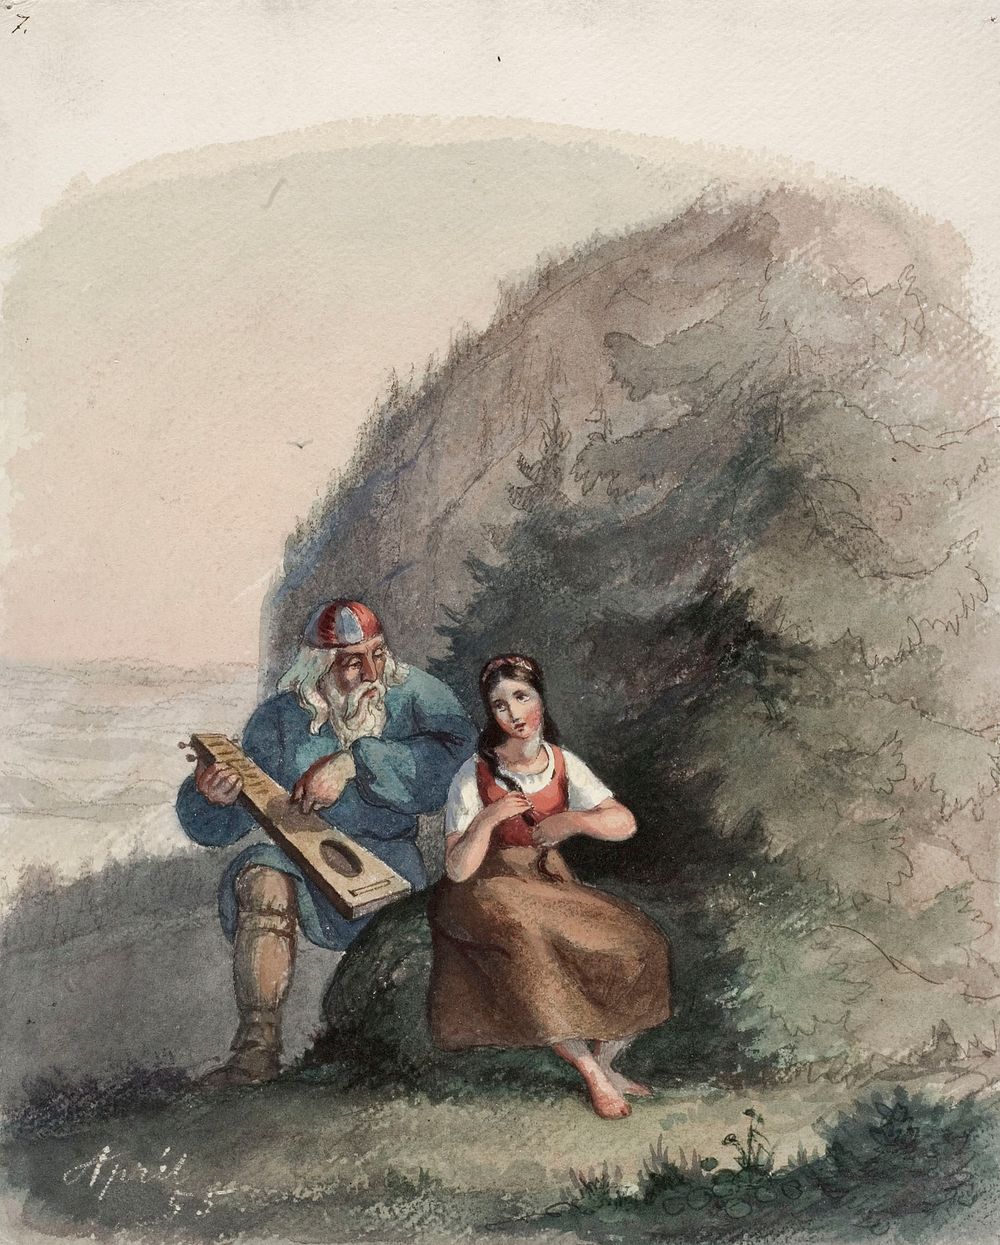 Väinämöinen stringing his kantele, 1855 by Anders Ekman